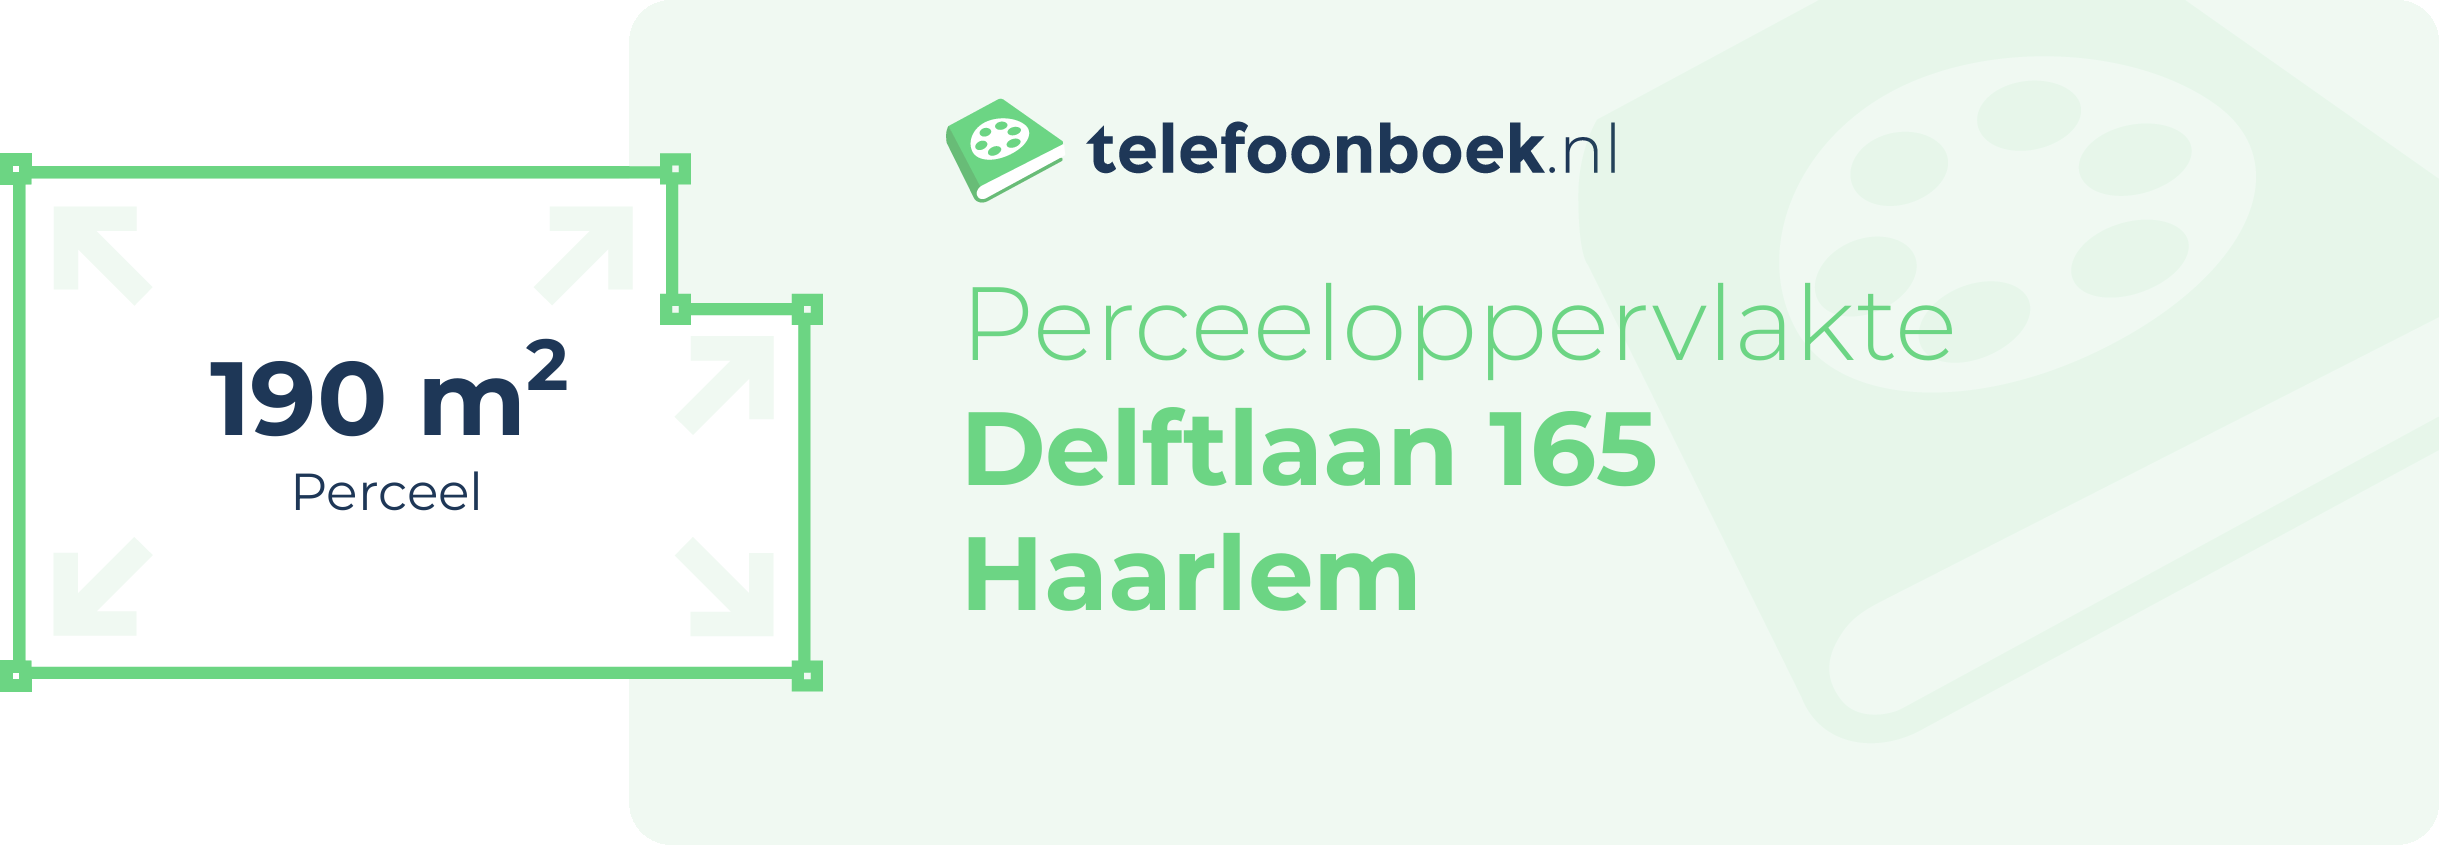 Perceeloppervlakte Delftlaan 165 Haarlem